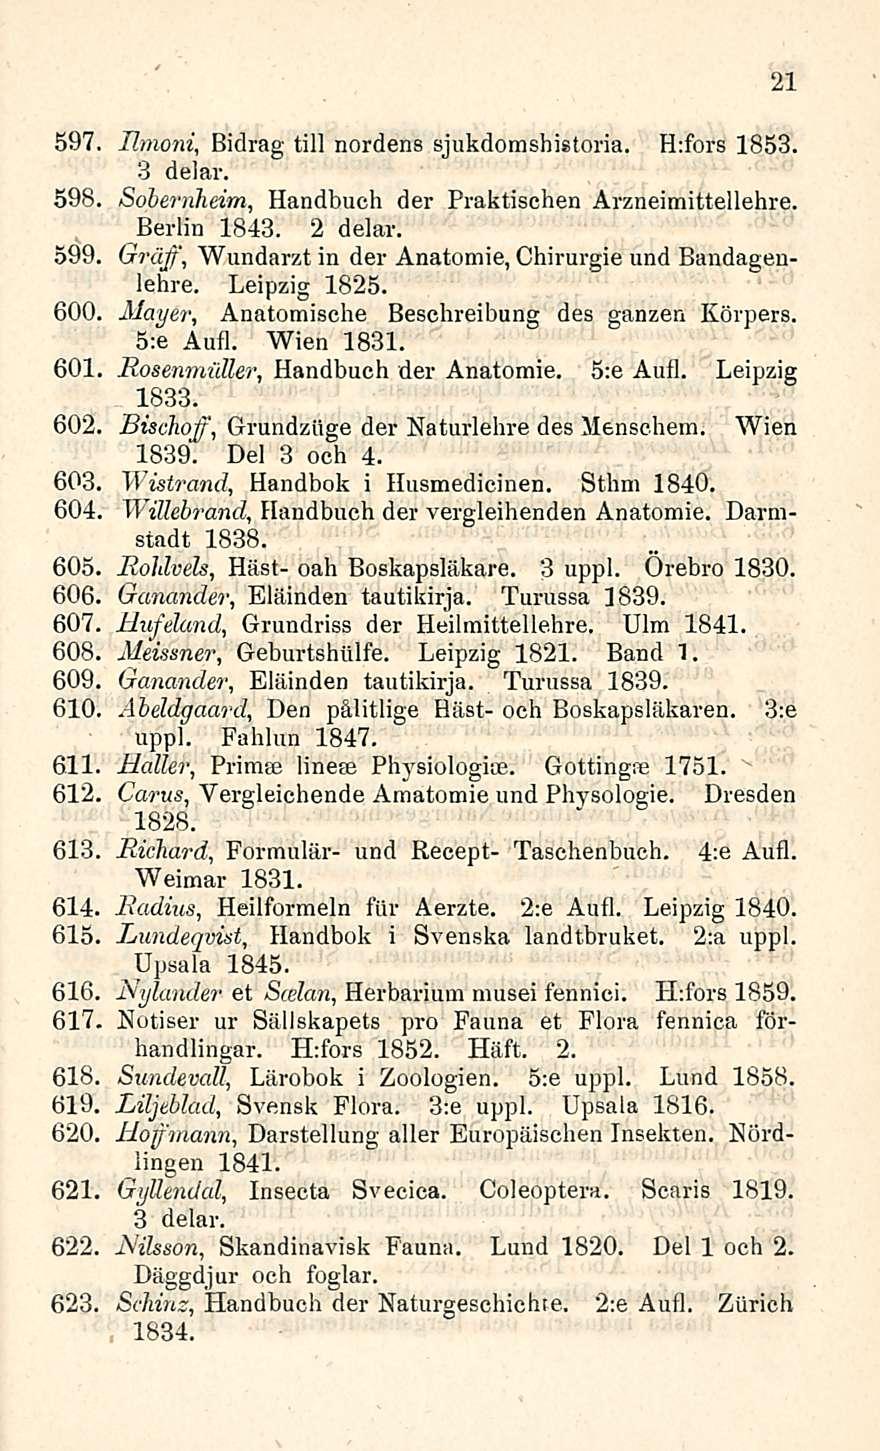 21 597 Ilmoni, Bidrag tili nordens sjukdomshistoria. H:fors 1853. 3 delar. 598, Handbuch der Praktischen Sobernheim, Arzneimittellehre. Berlin 1843. 2 delar.